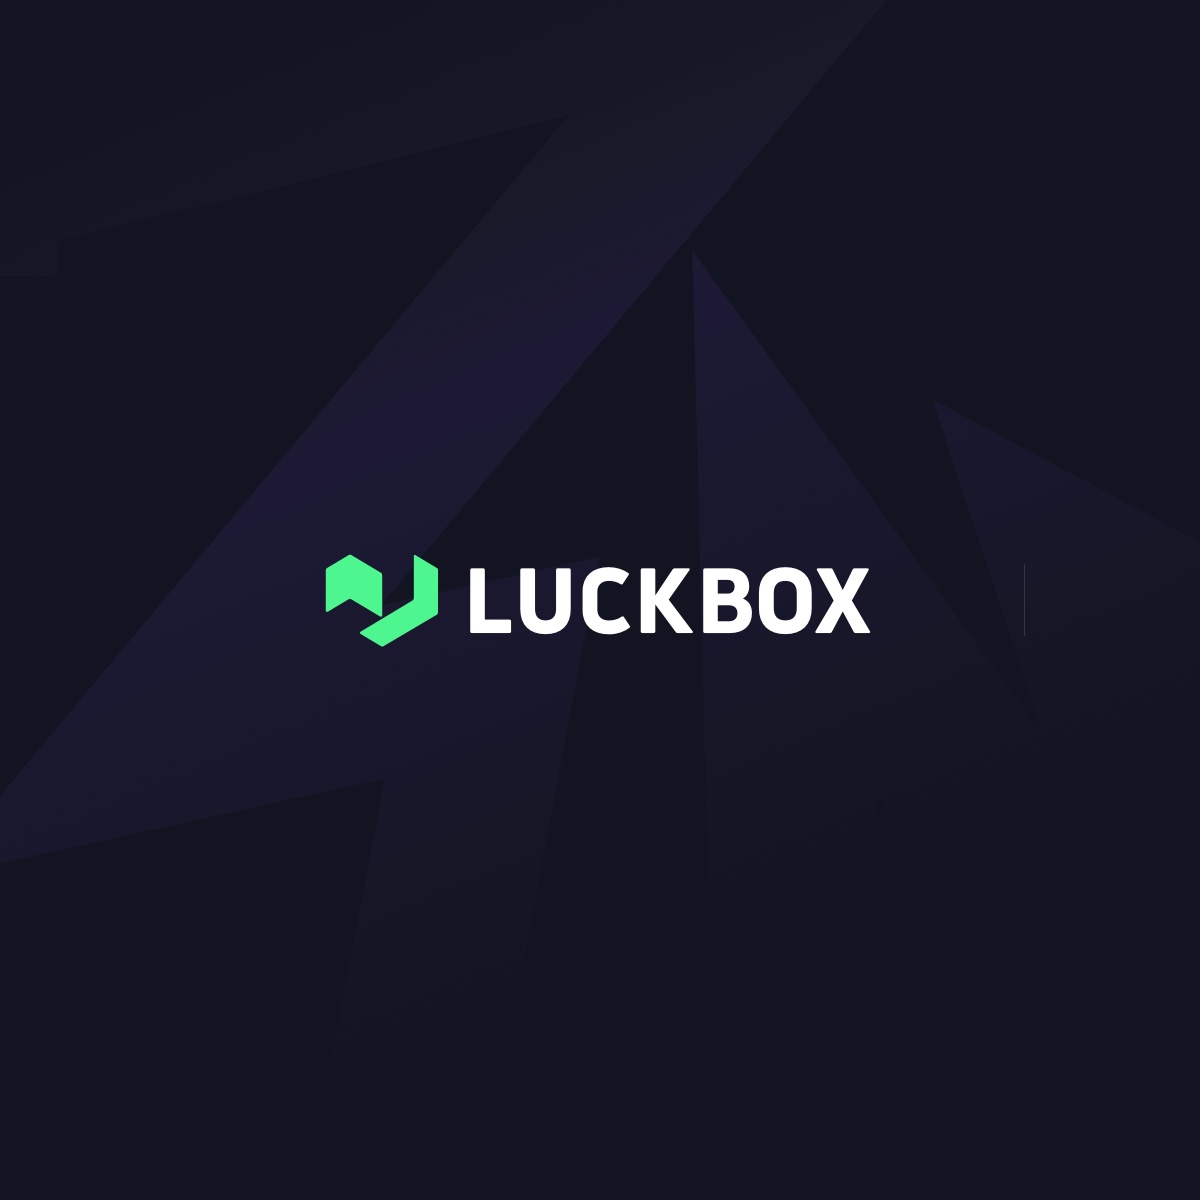 luckbox-og-assetcfcdd82d